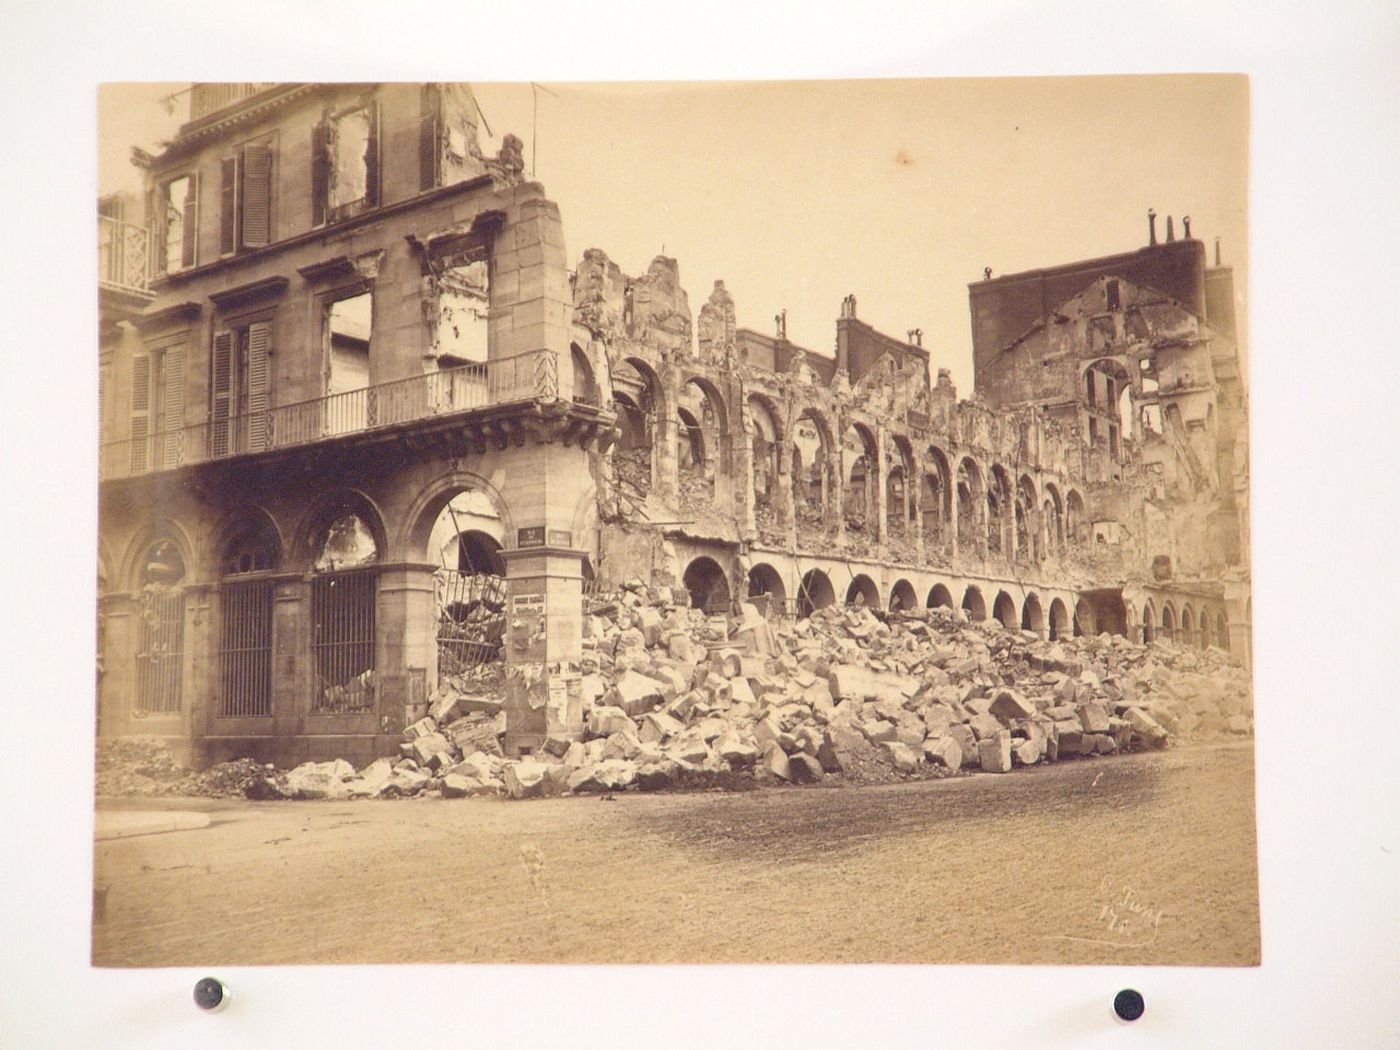 View of the Ministère des Finances after the Paris Commune uprising of 1871, corner of rue de Luxembourg and rue de Rivoli, Paris, France